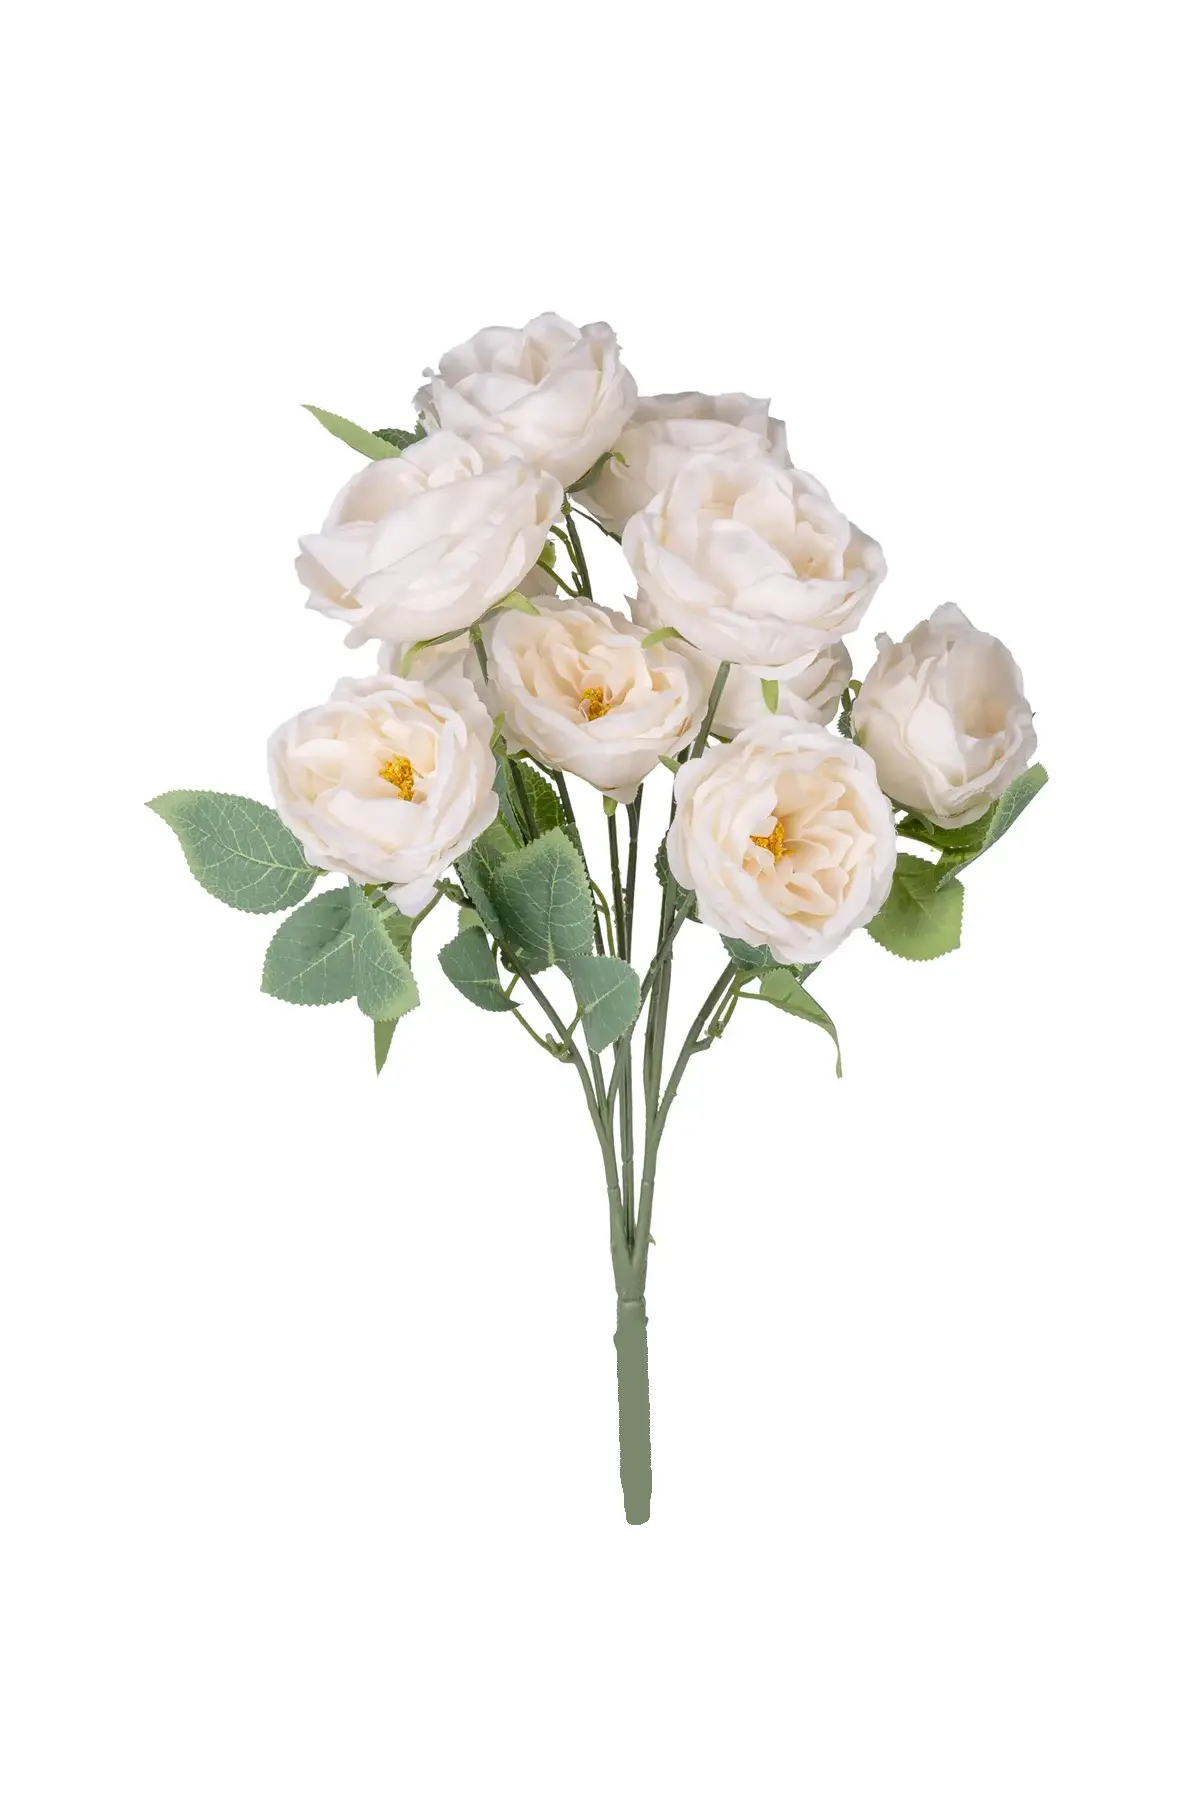 Yapay Çiçek Deposu - Yapay Çiçek 10 Dallı Catalina Rose 45 cm Krem 